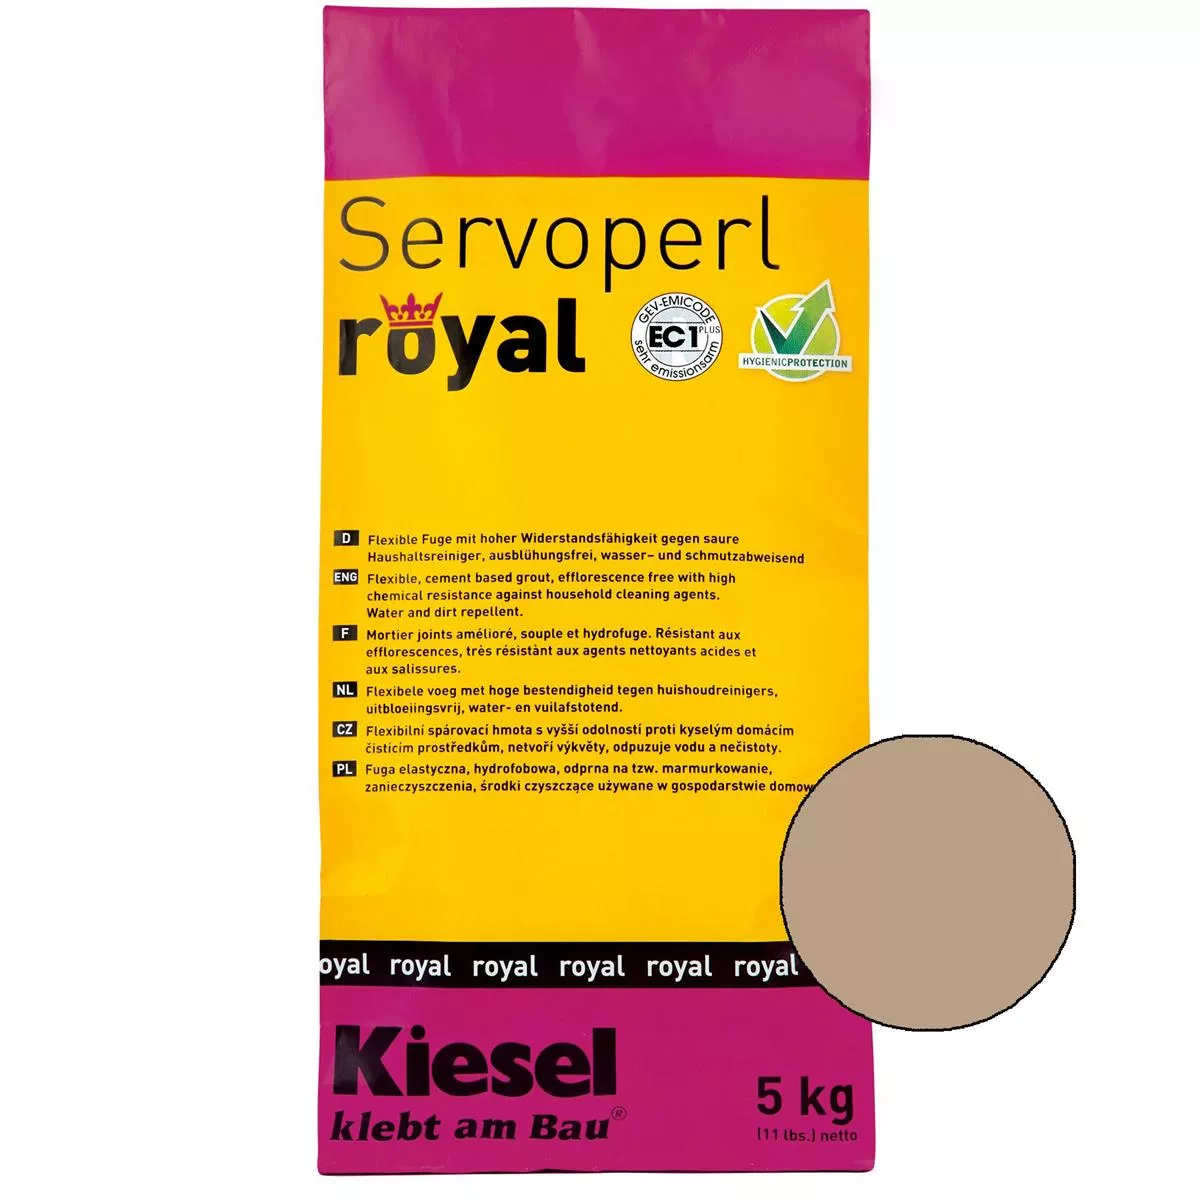 Kiesel Servoperl Royal - Elastyczna, Odporna Na Wodę I Brud Spoina (5KG Desert Sand)